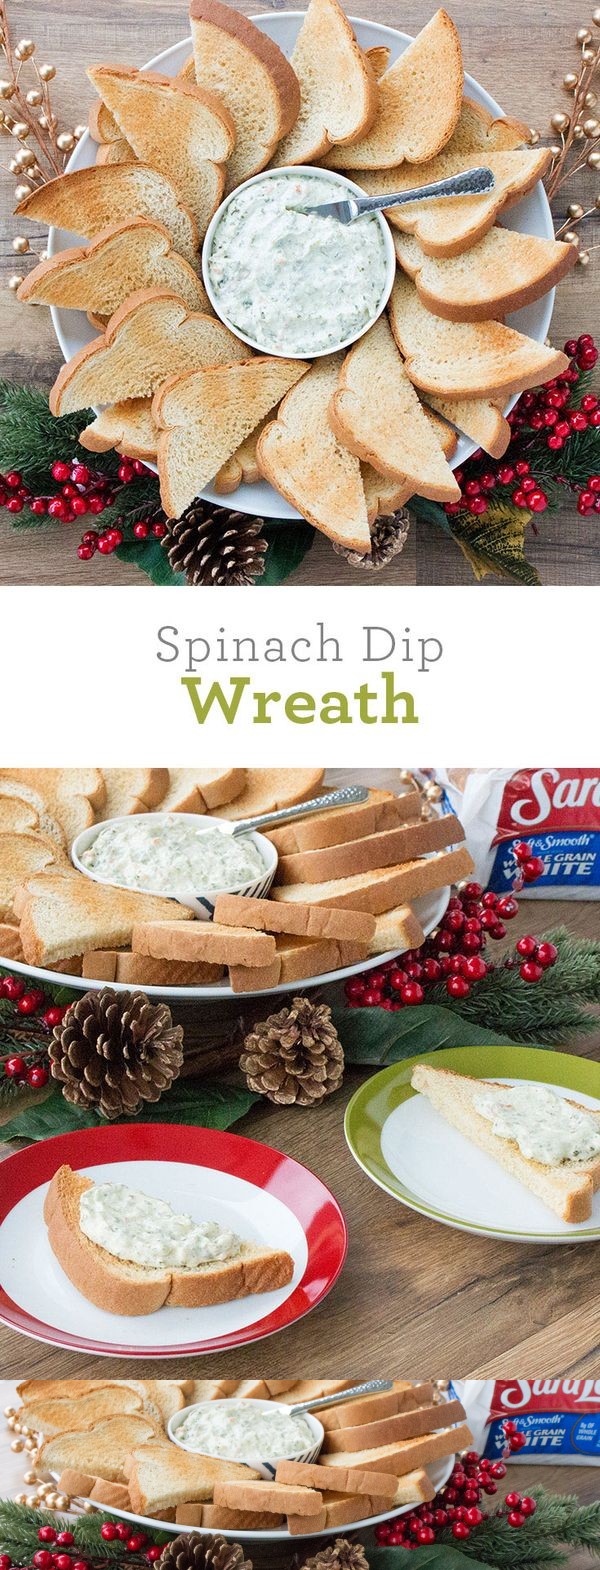 Spinach Dip Wreath